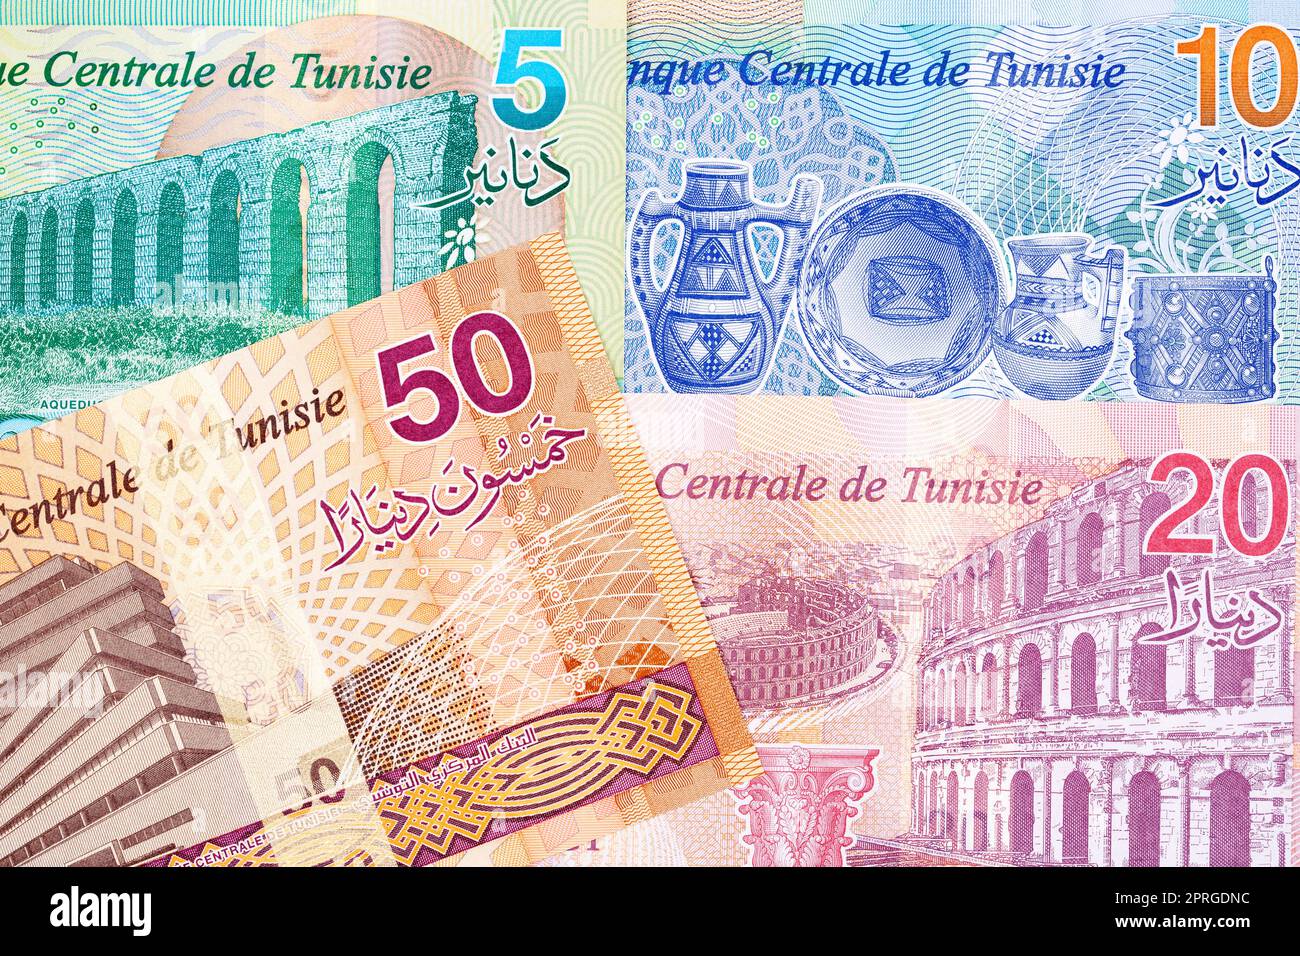 Monnaie tunisienne - nouvelle série de billets Banque D'Images